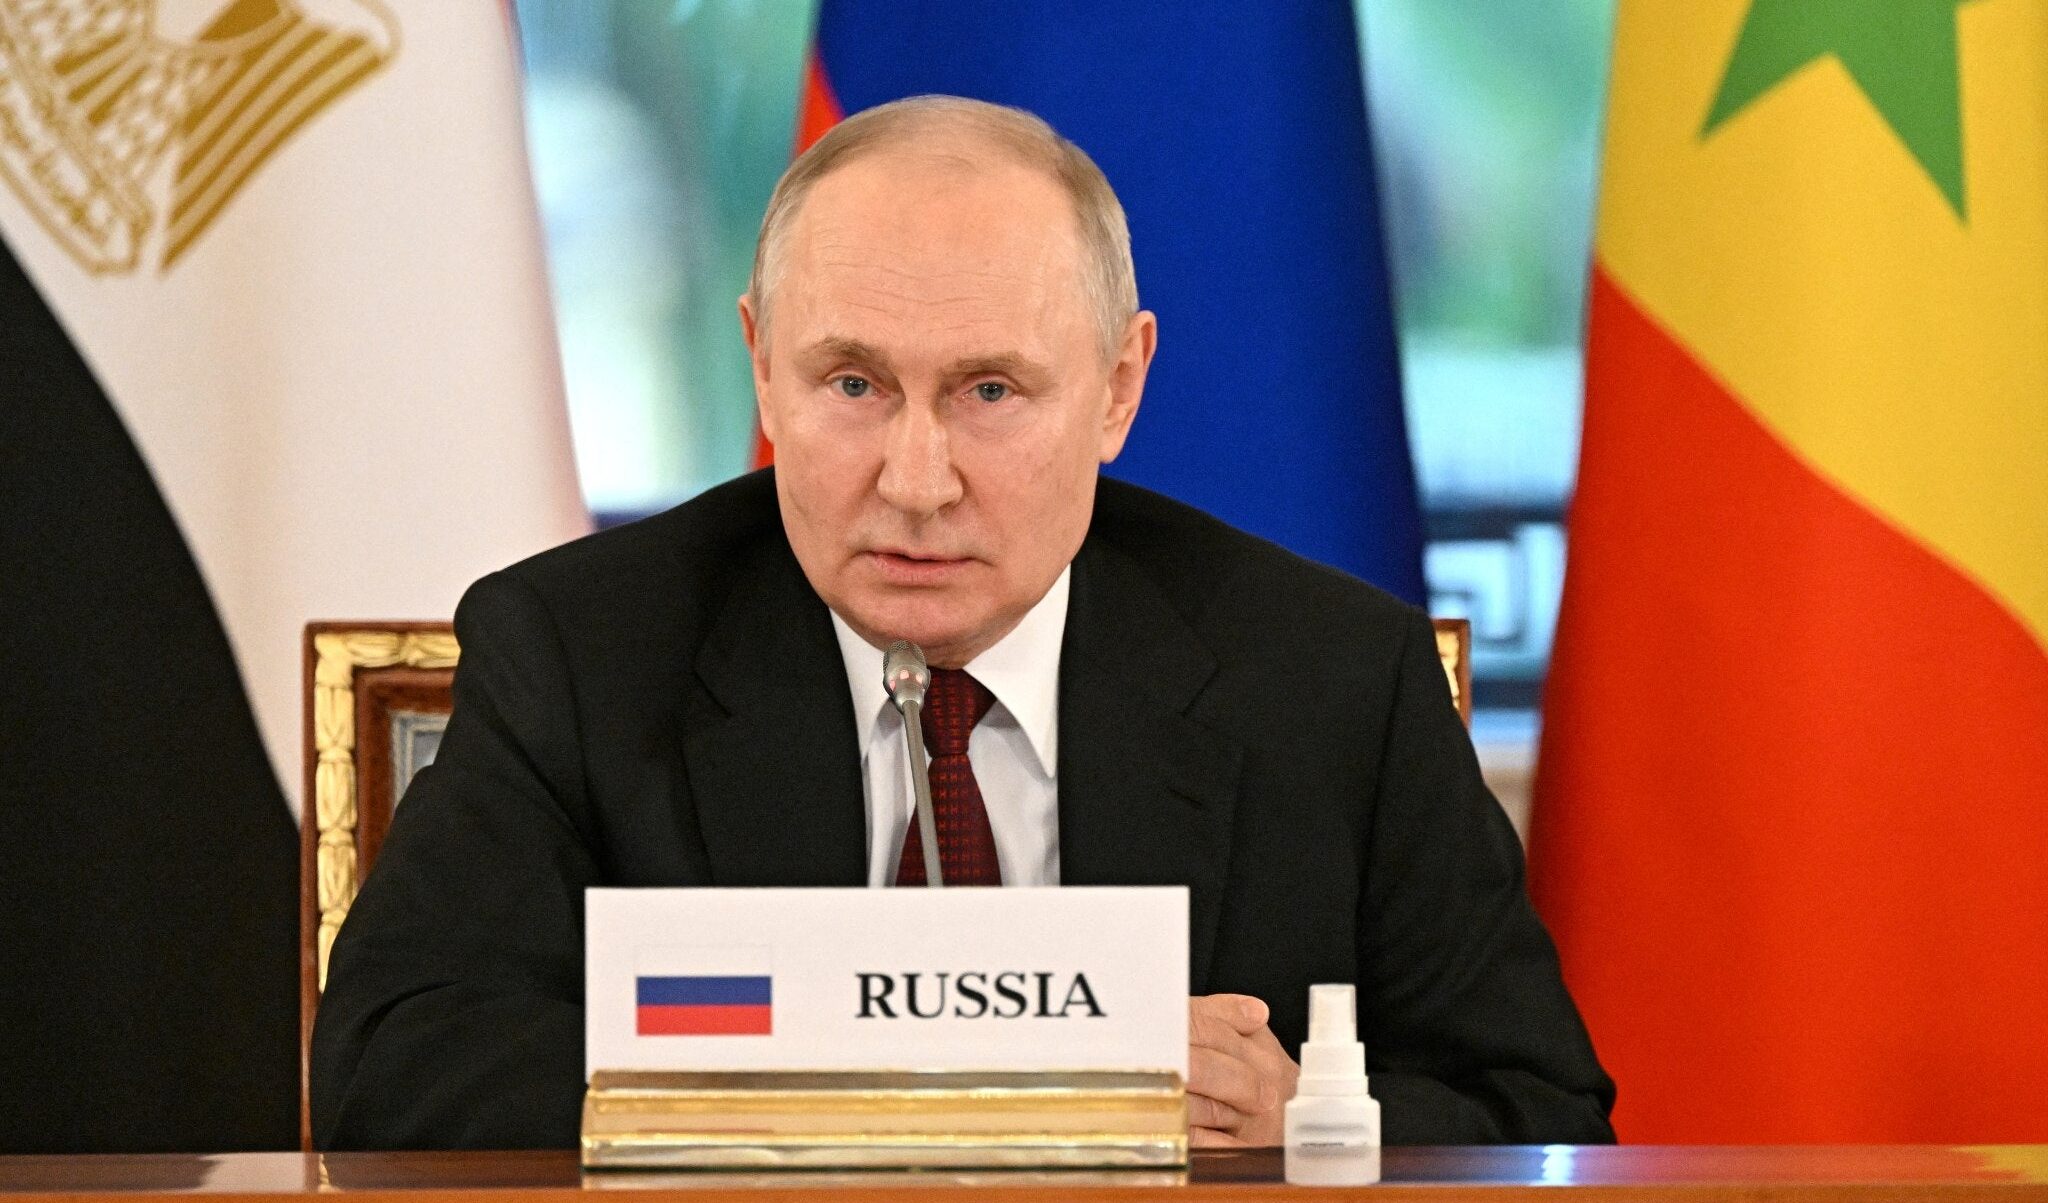 Il retroscena: Putin cerca un accordo per fermare la guerra in Ucraina e salvare la faccia